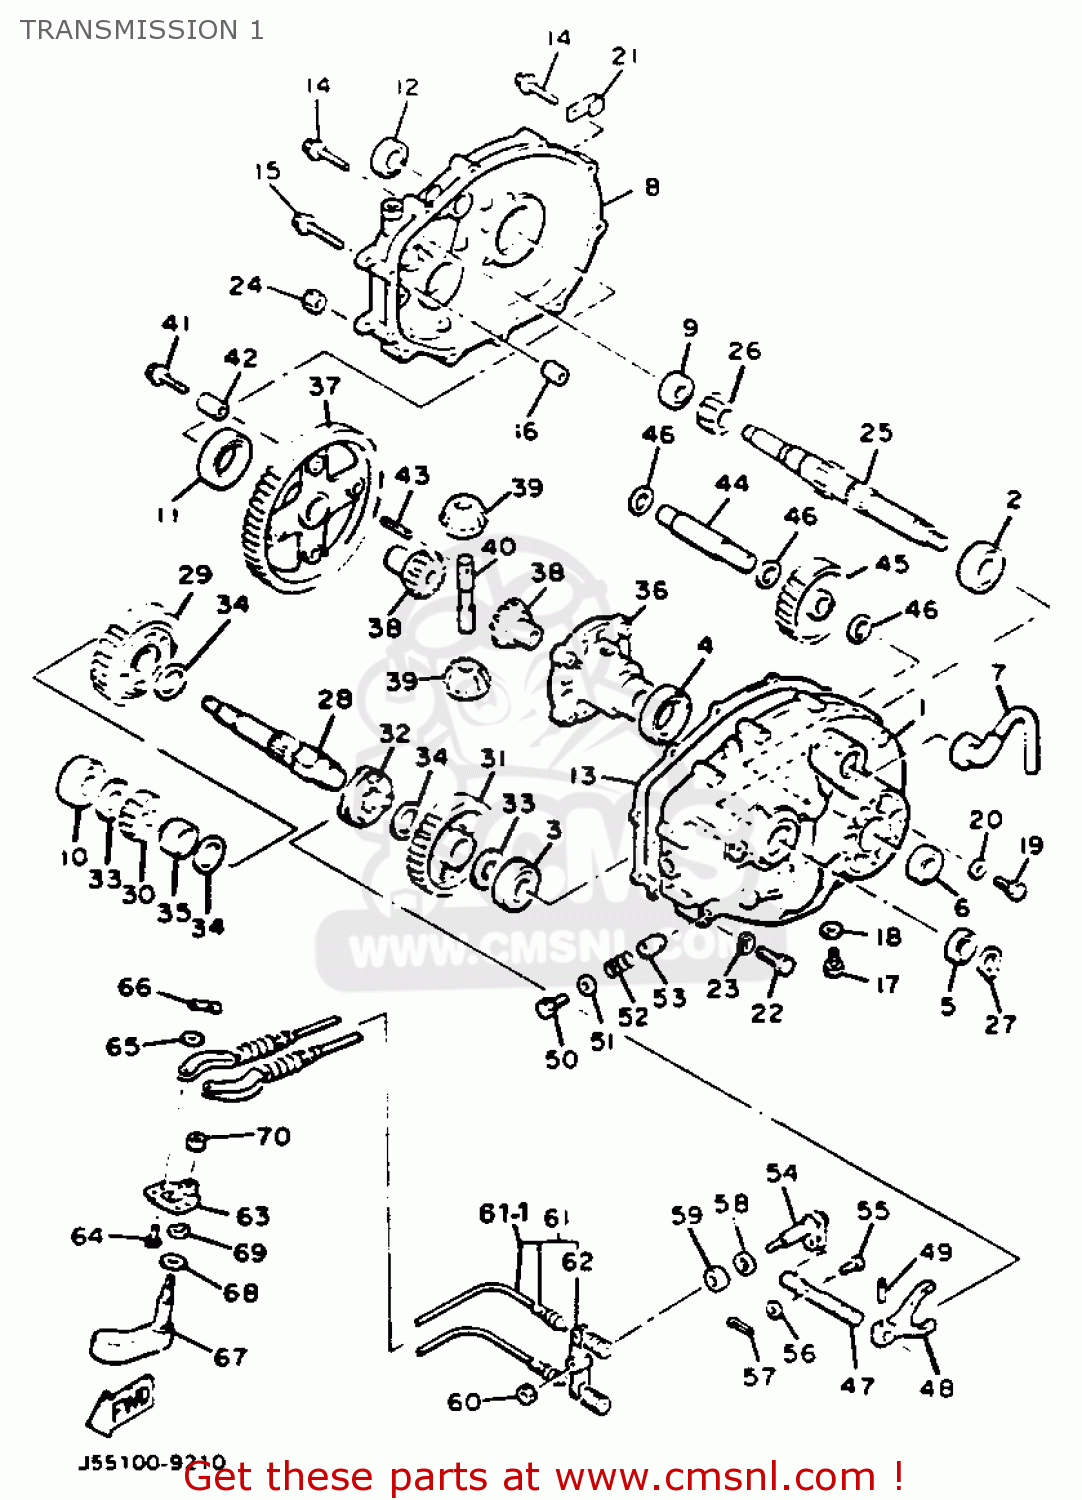 Yamaha G9-ah Golf Car 1992 Transmission 1 - schematic ... club car carryall parts diagram 